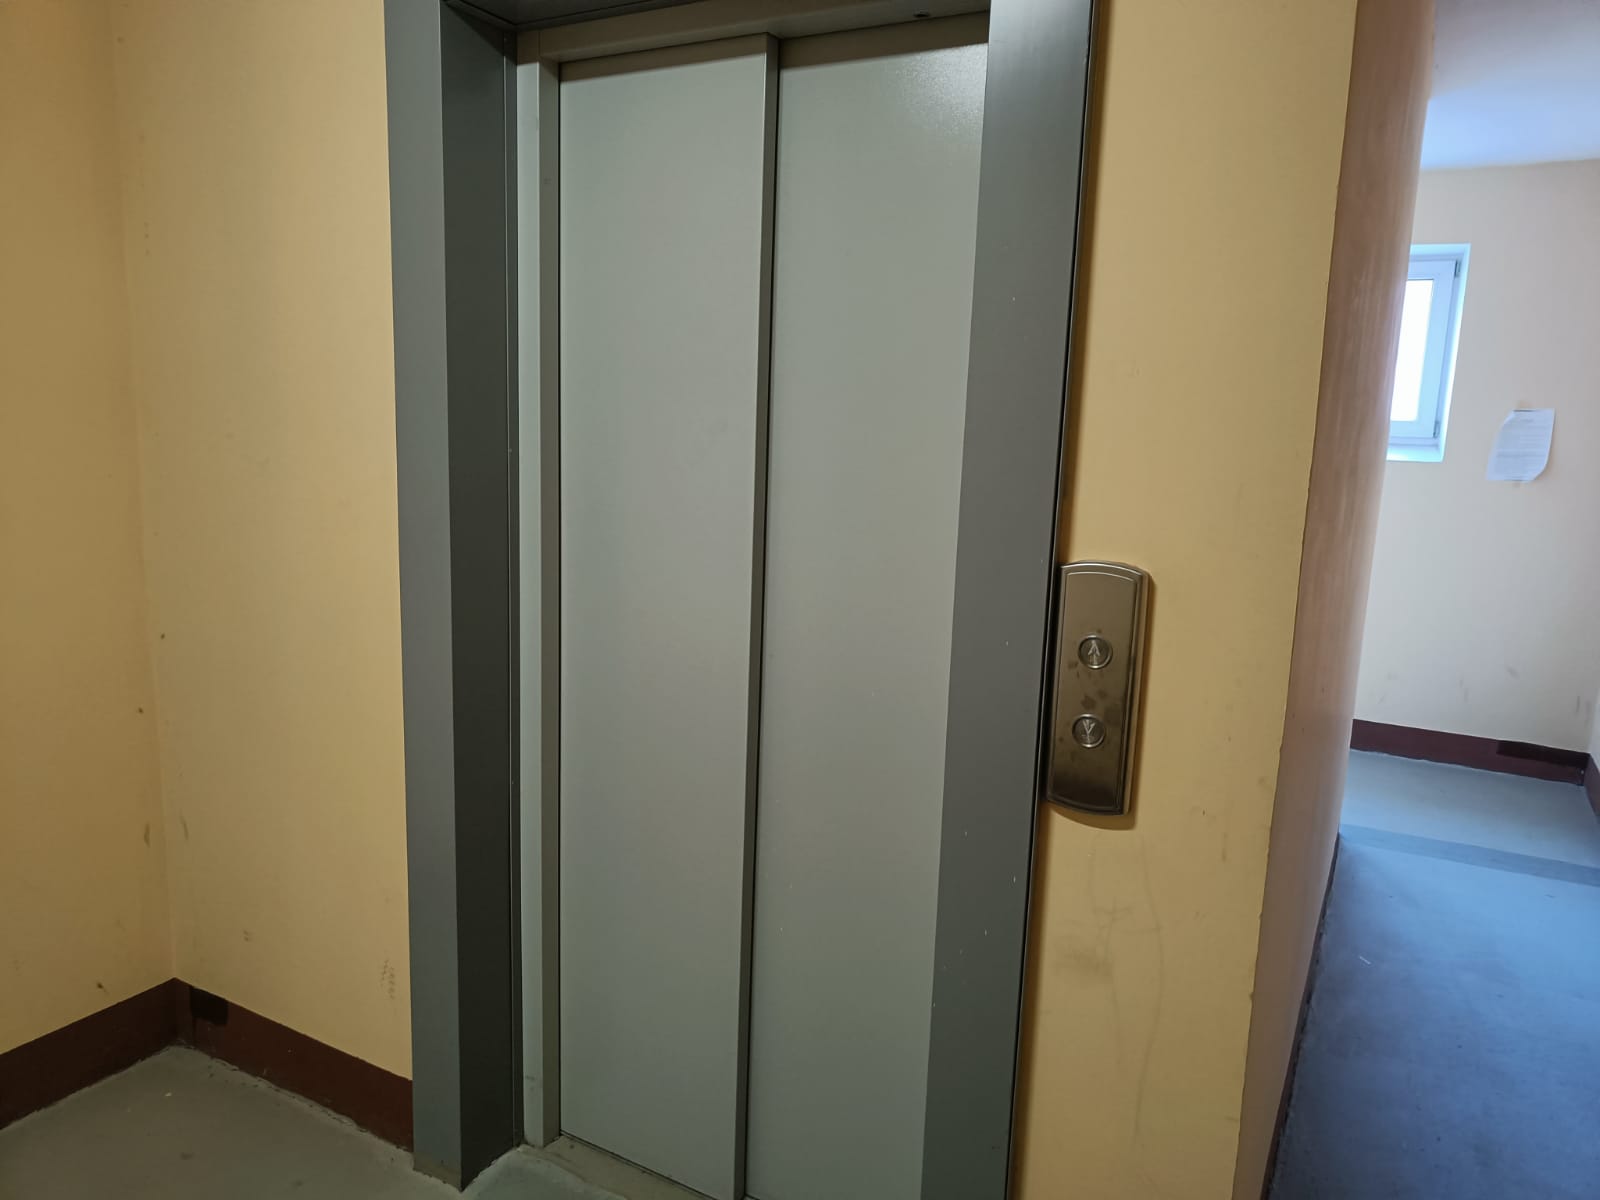 Новые лифты установят в 13 многоэтажных домах Тынды